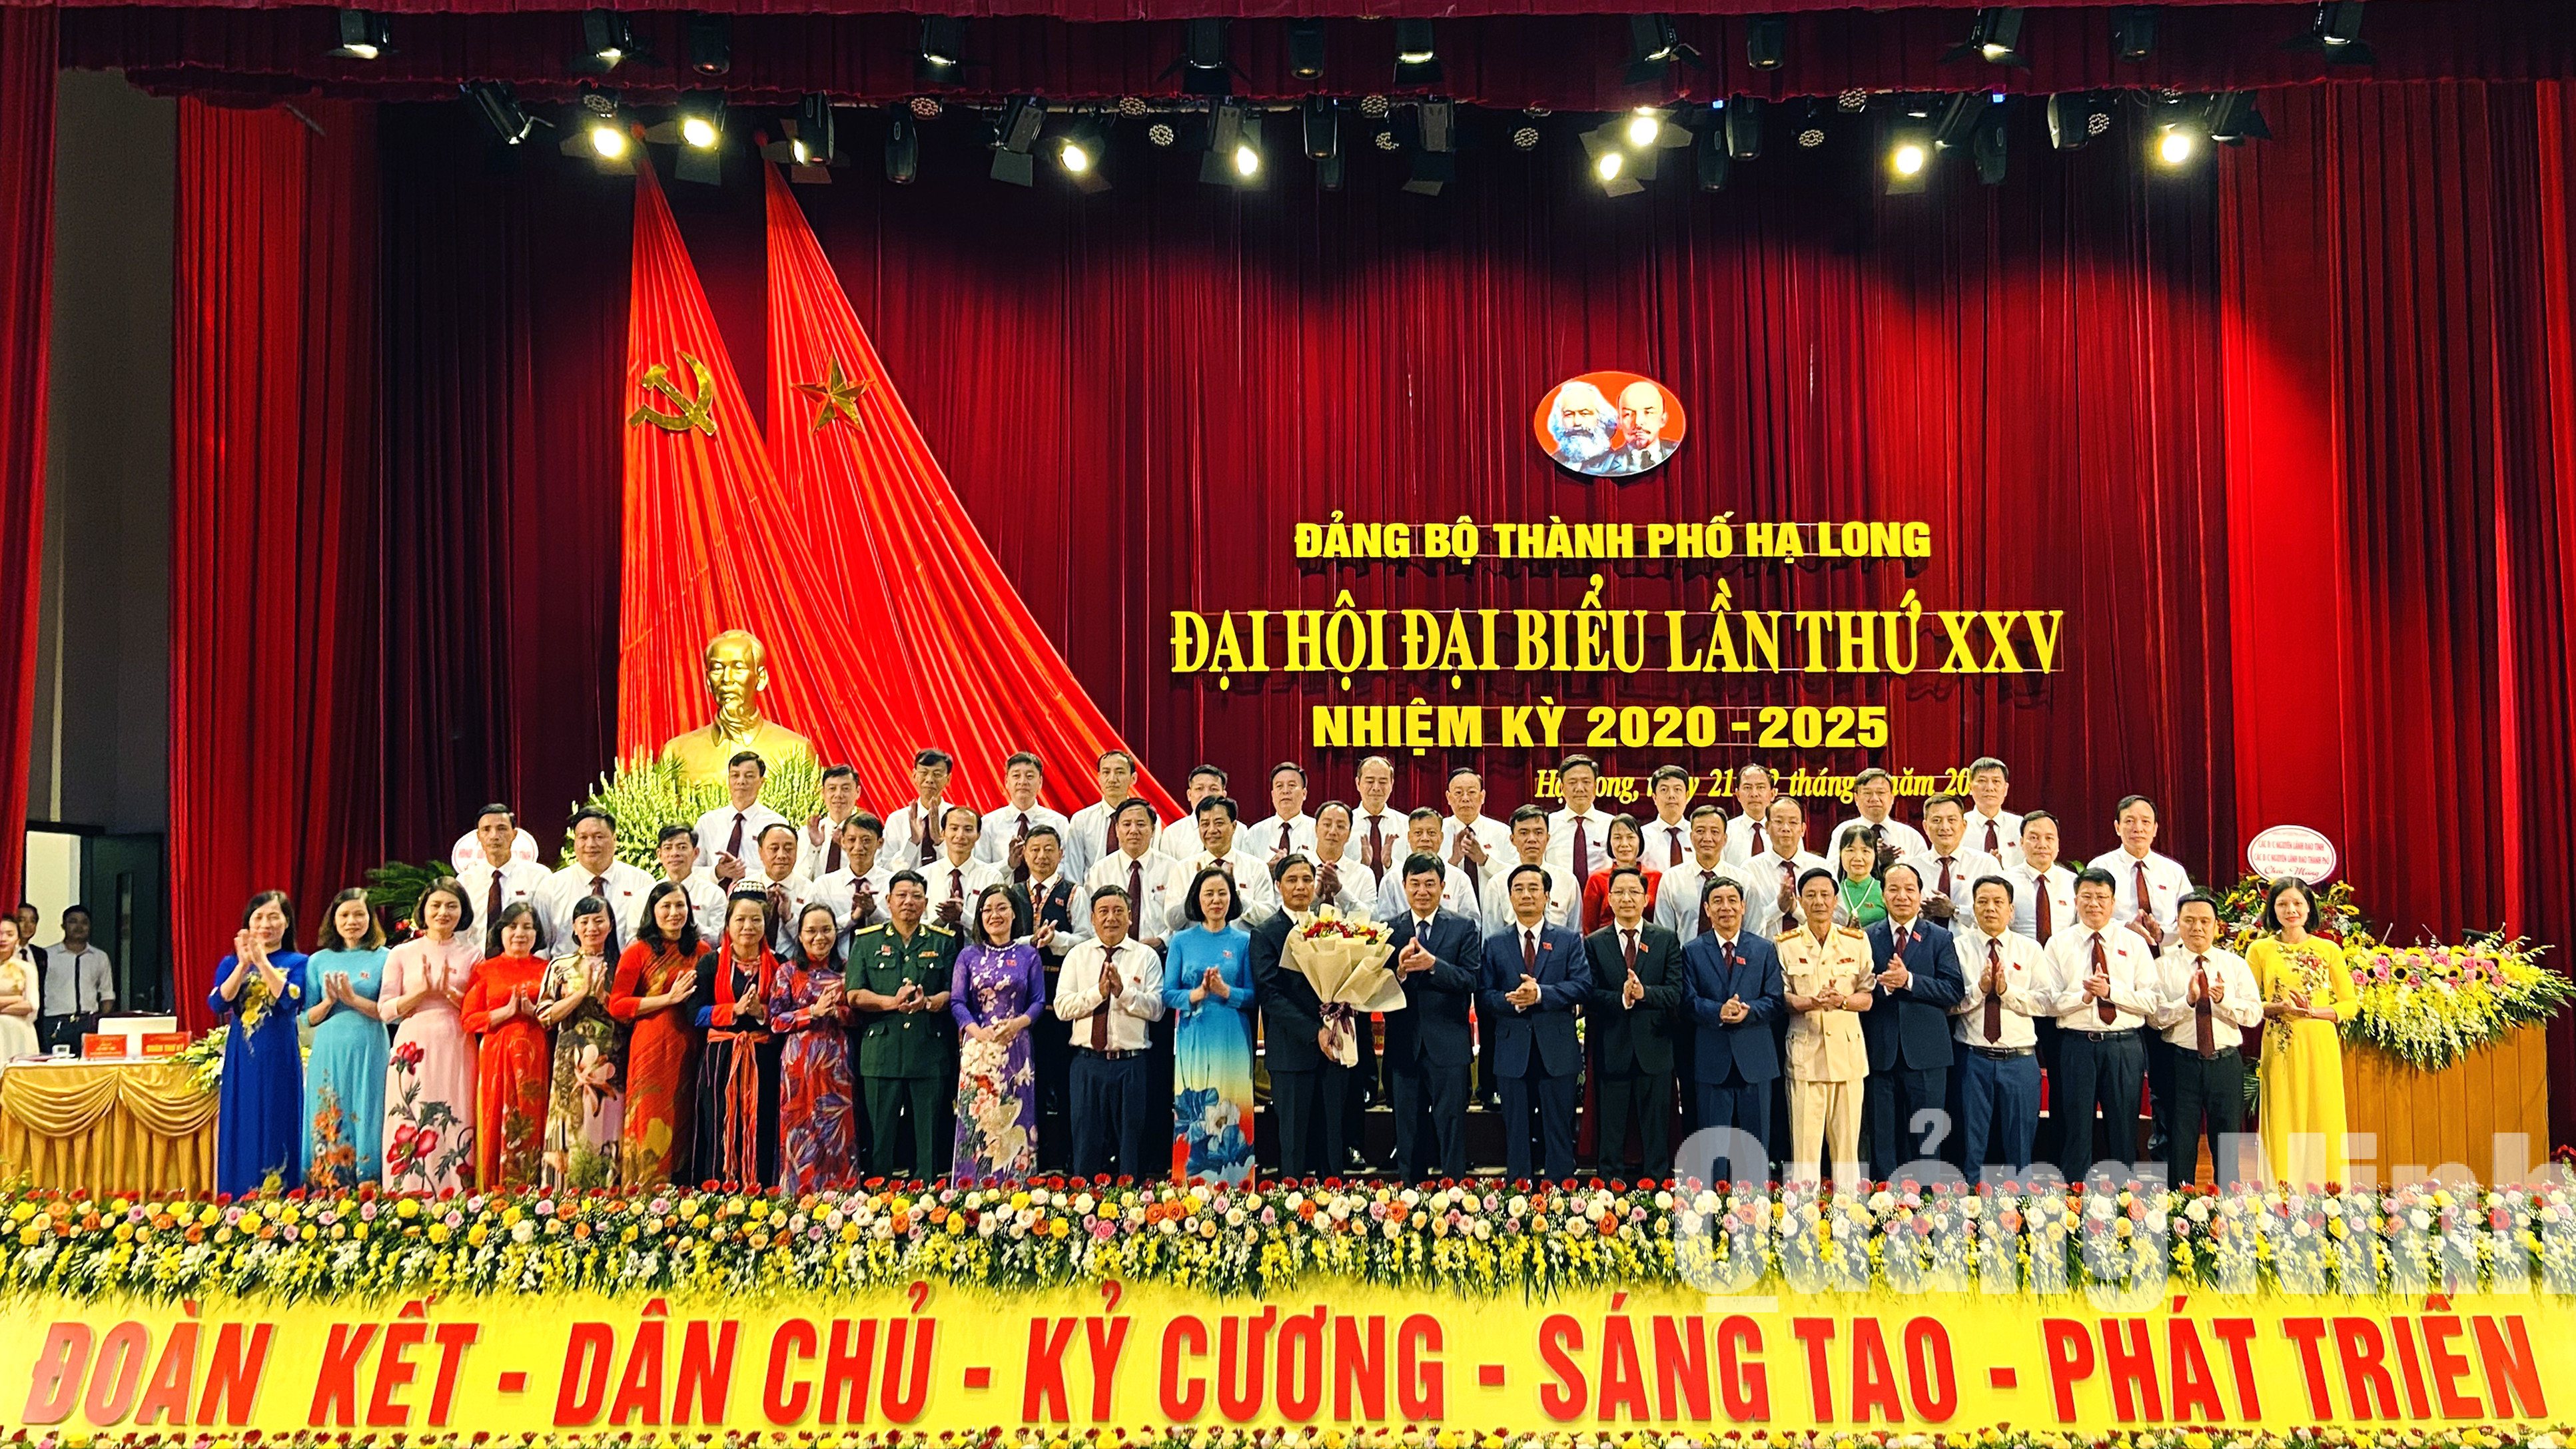 Đồng chí Ngô Hoàng Ngân, Phó Bí thư Thường trực Tỉnh ủy, tặng hoa chúc mừng BCH Đảng bộ thành phố khóa XXV (7-2020). Ảnh: Thu Chung